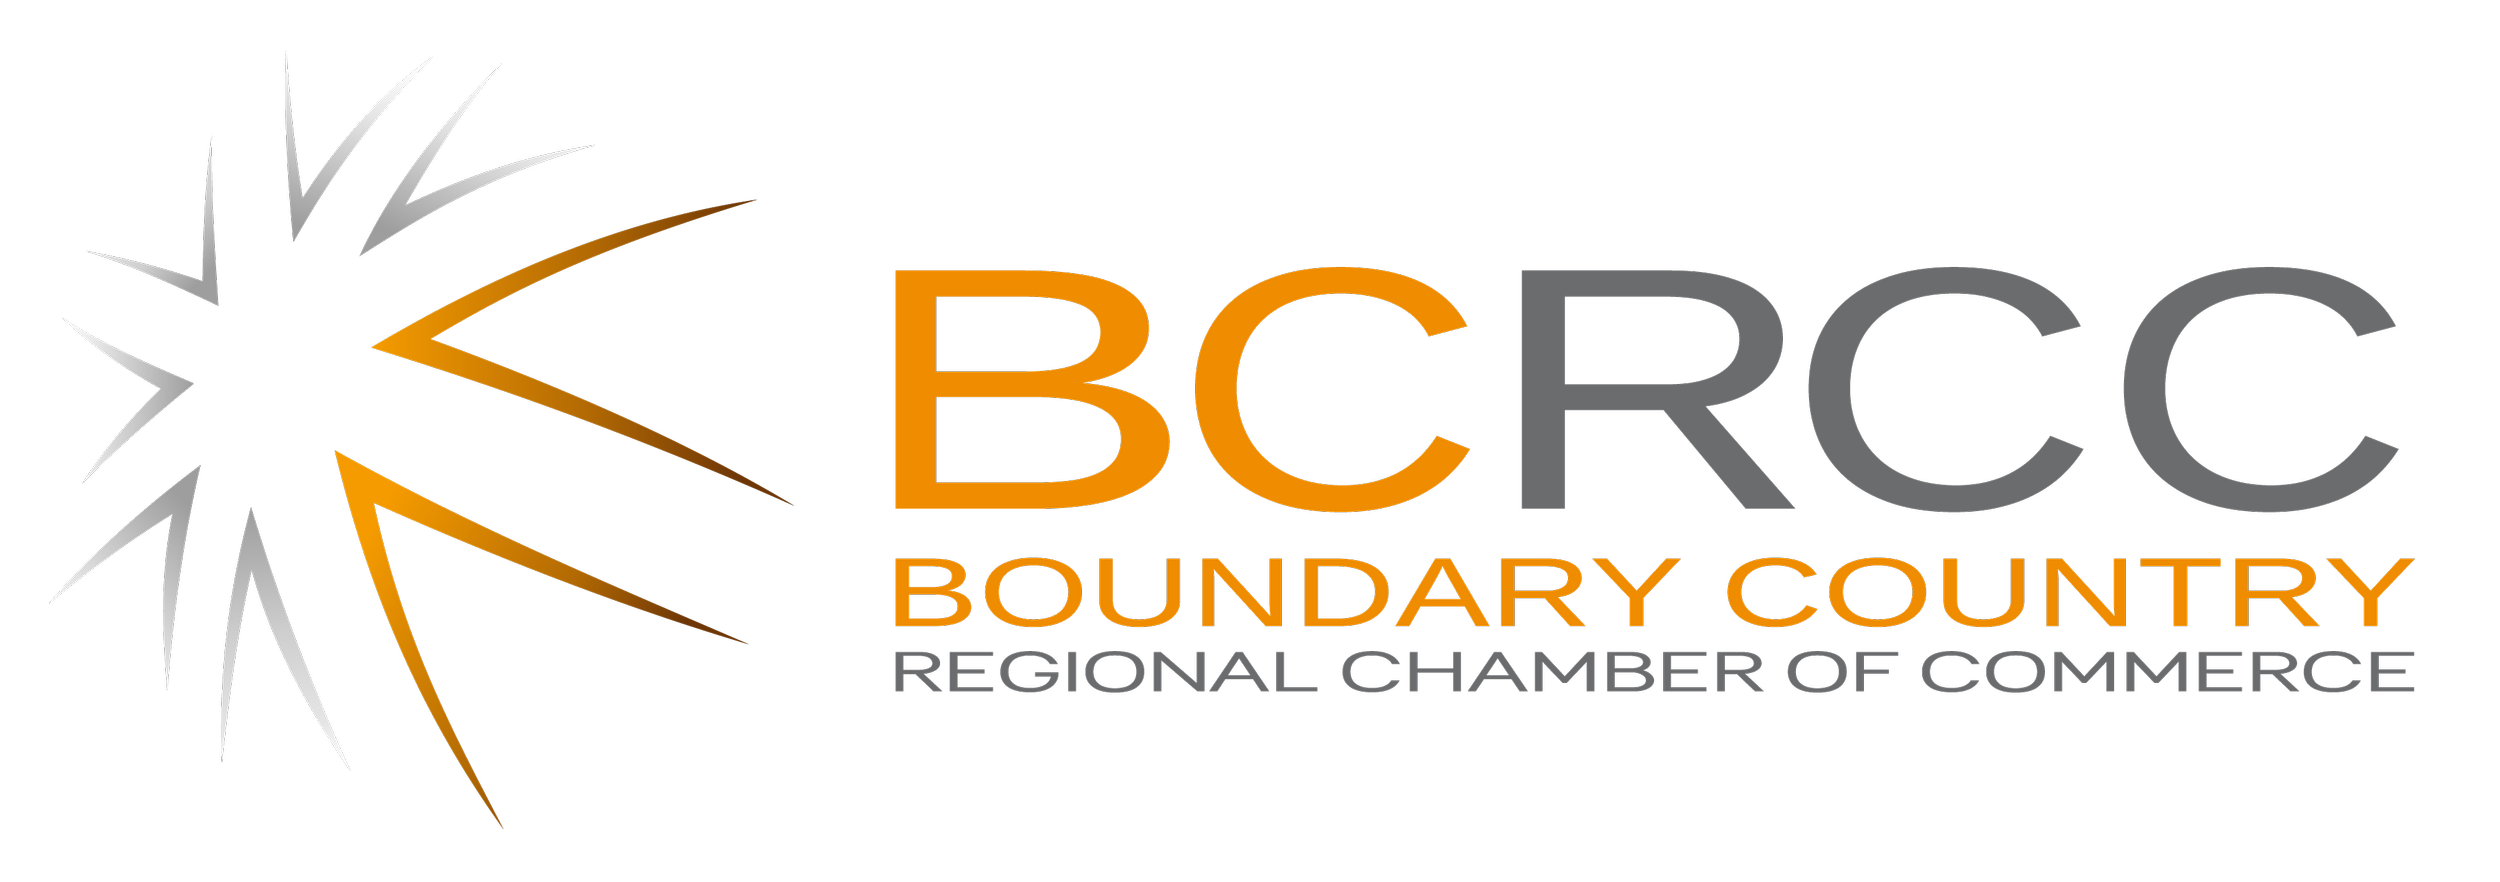 bcrcc-logo (2).png